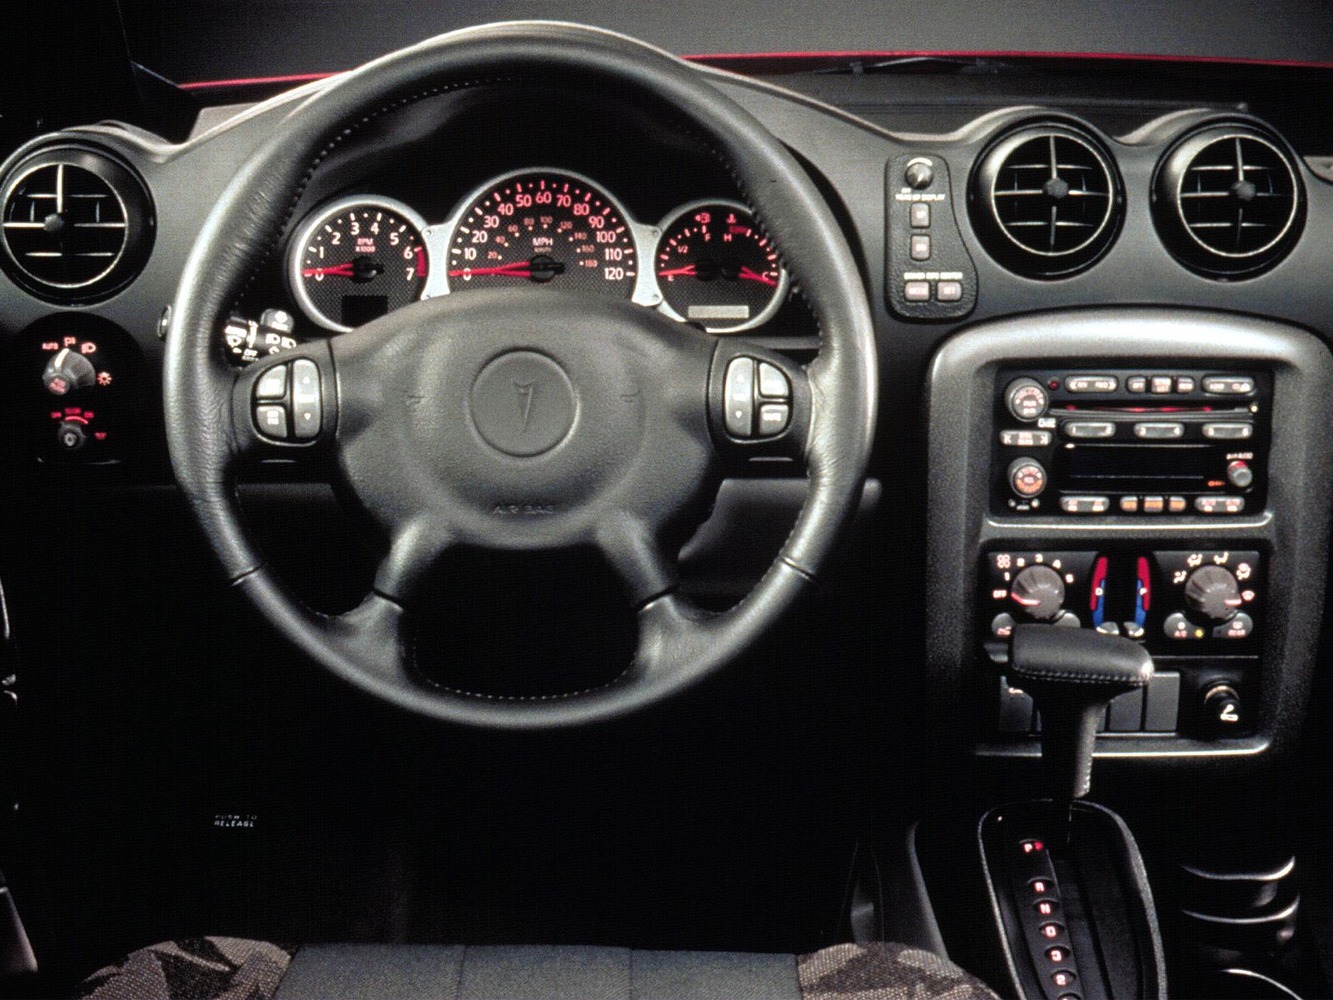 кроссовер Pontiac Aztek 2000 - 2005г выпуска модификация 3.4 AT (188 л.с.)